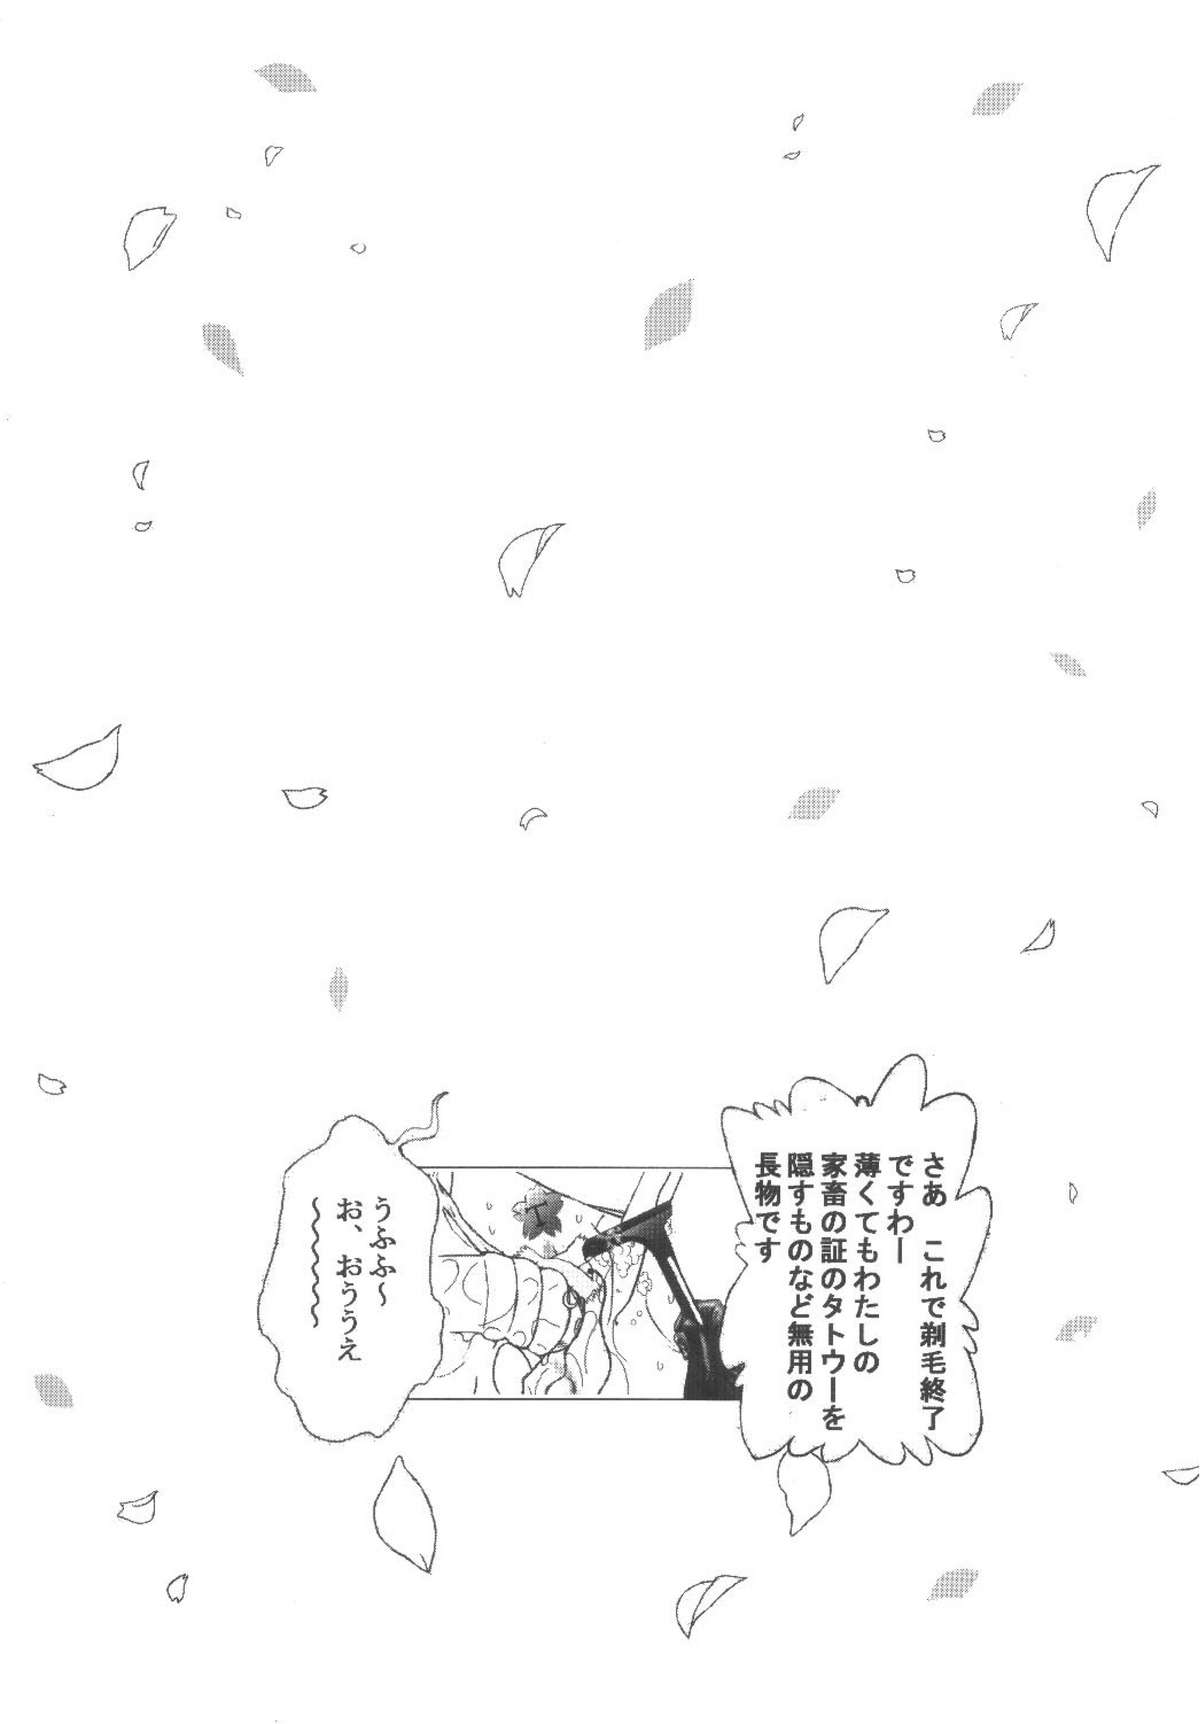 [九龍城 (岡村凡斎、鈴木胸男)] 九龍城11 さくらちゃんで遊ぼう6 (カードキャプターさくら)